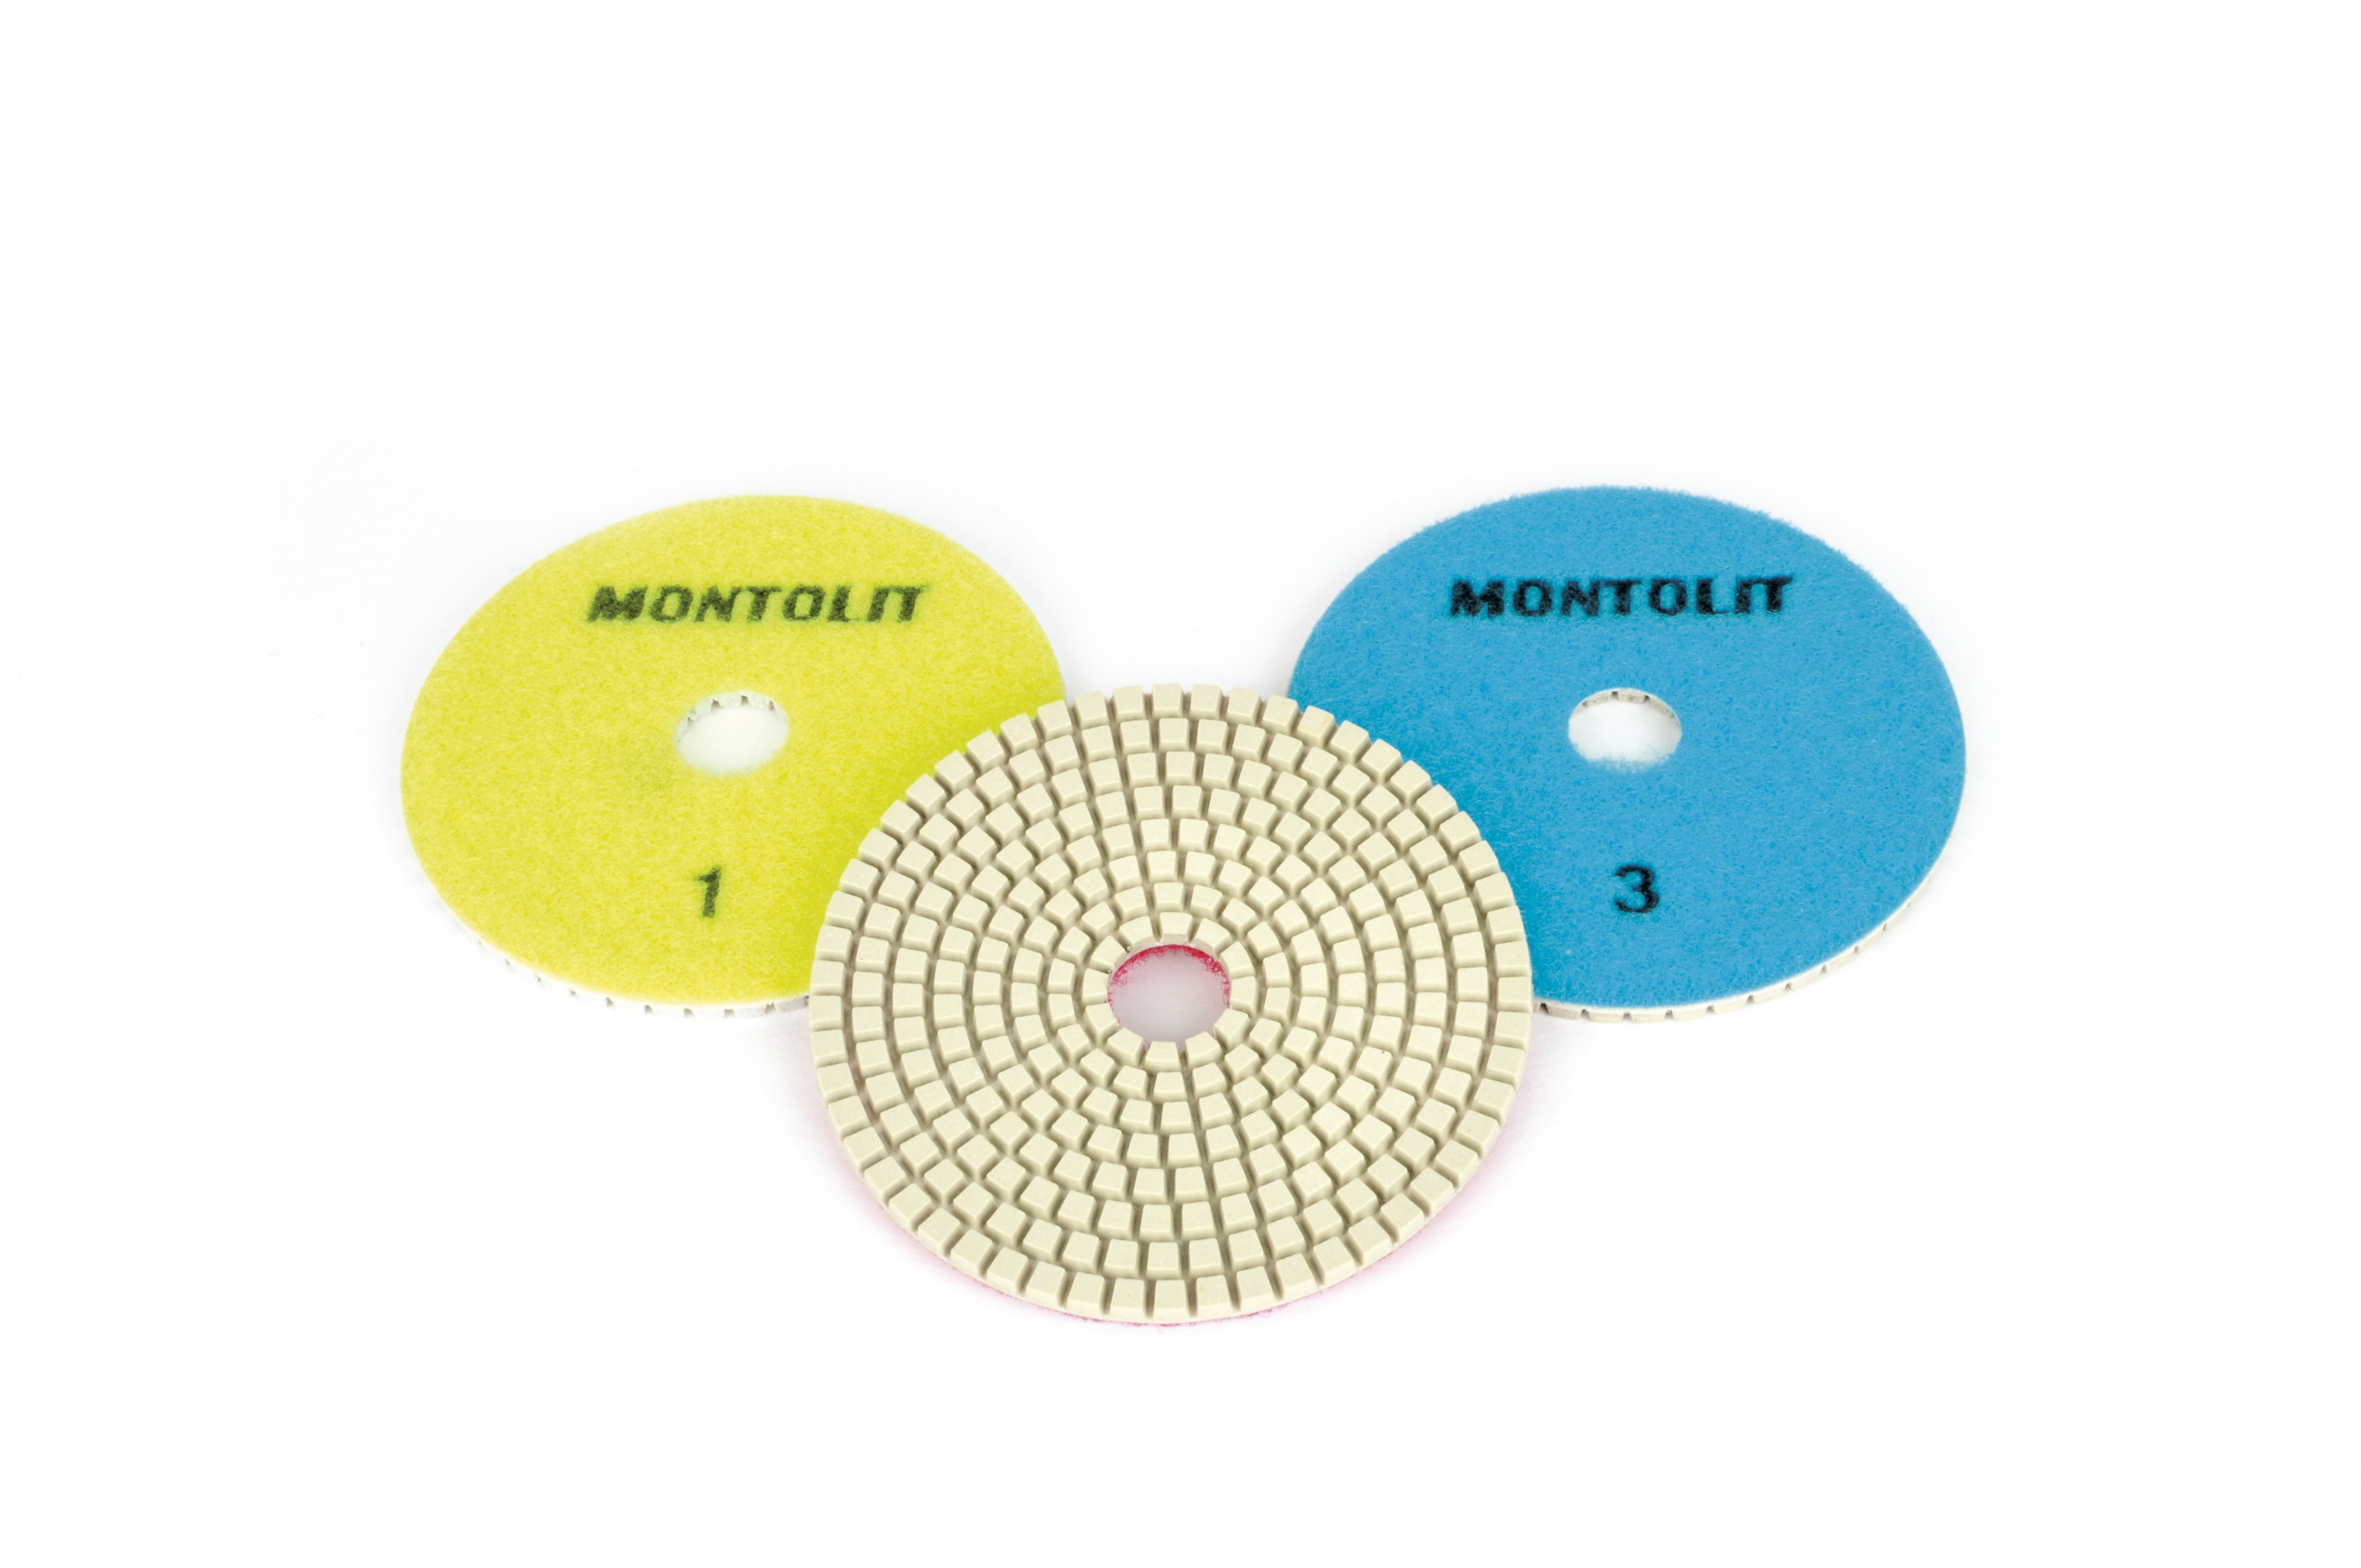 Montolit (PDRKIT)